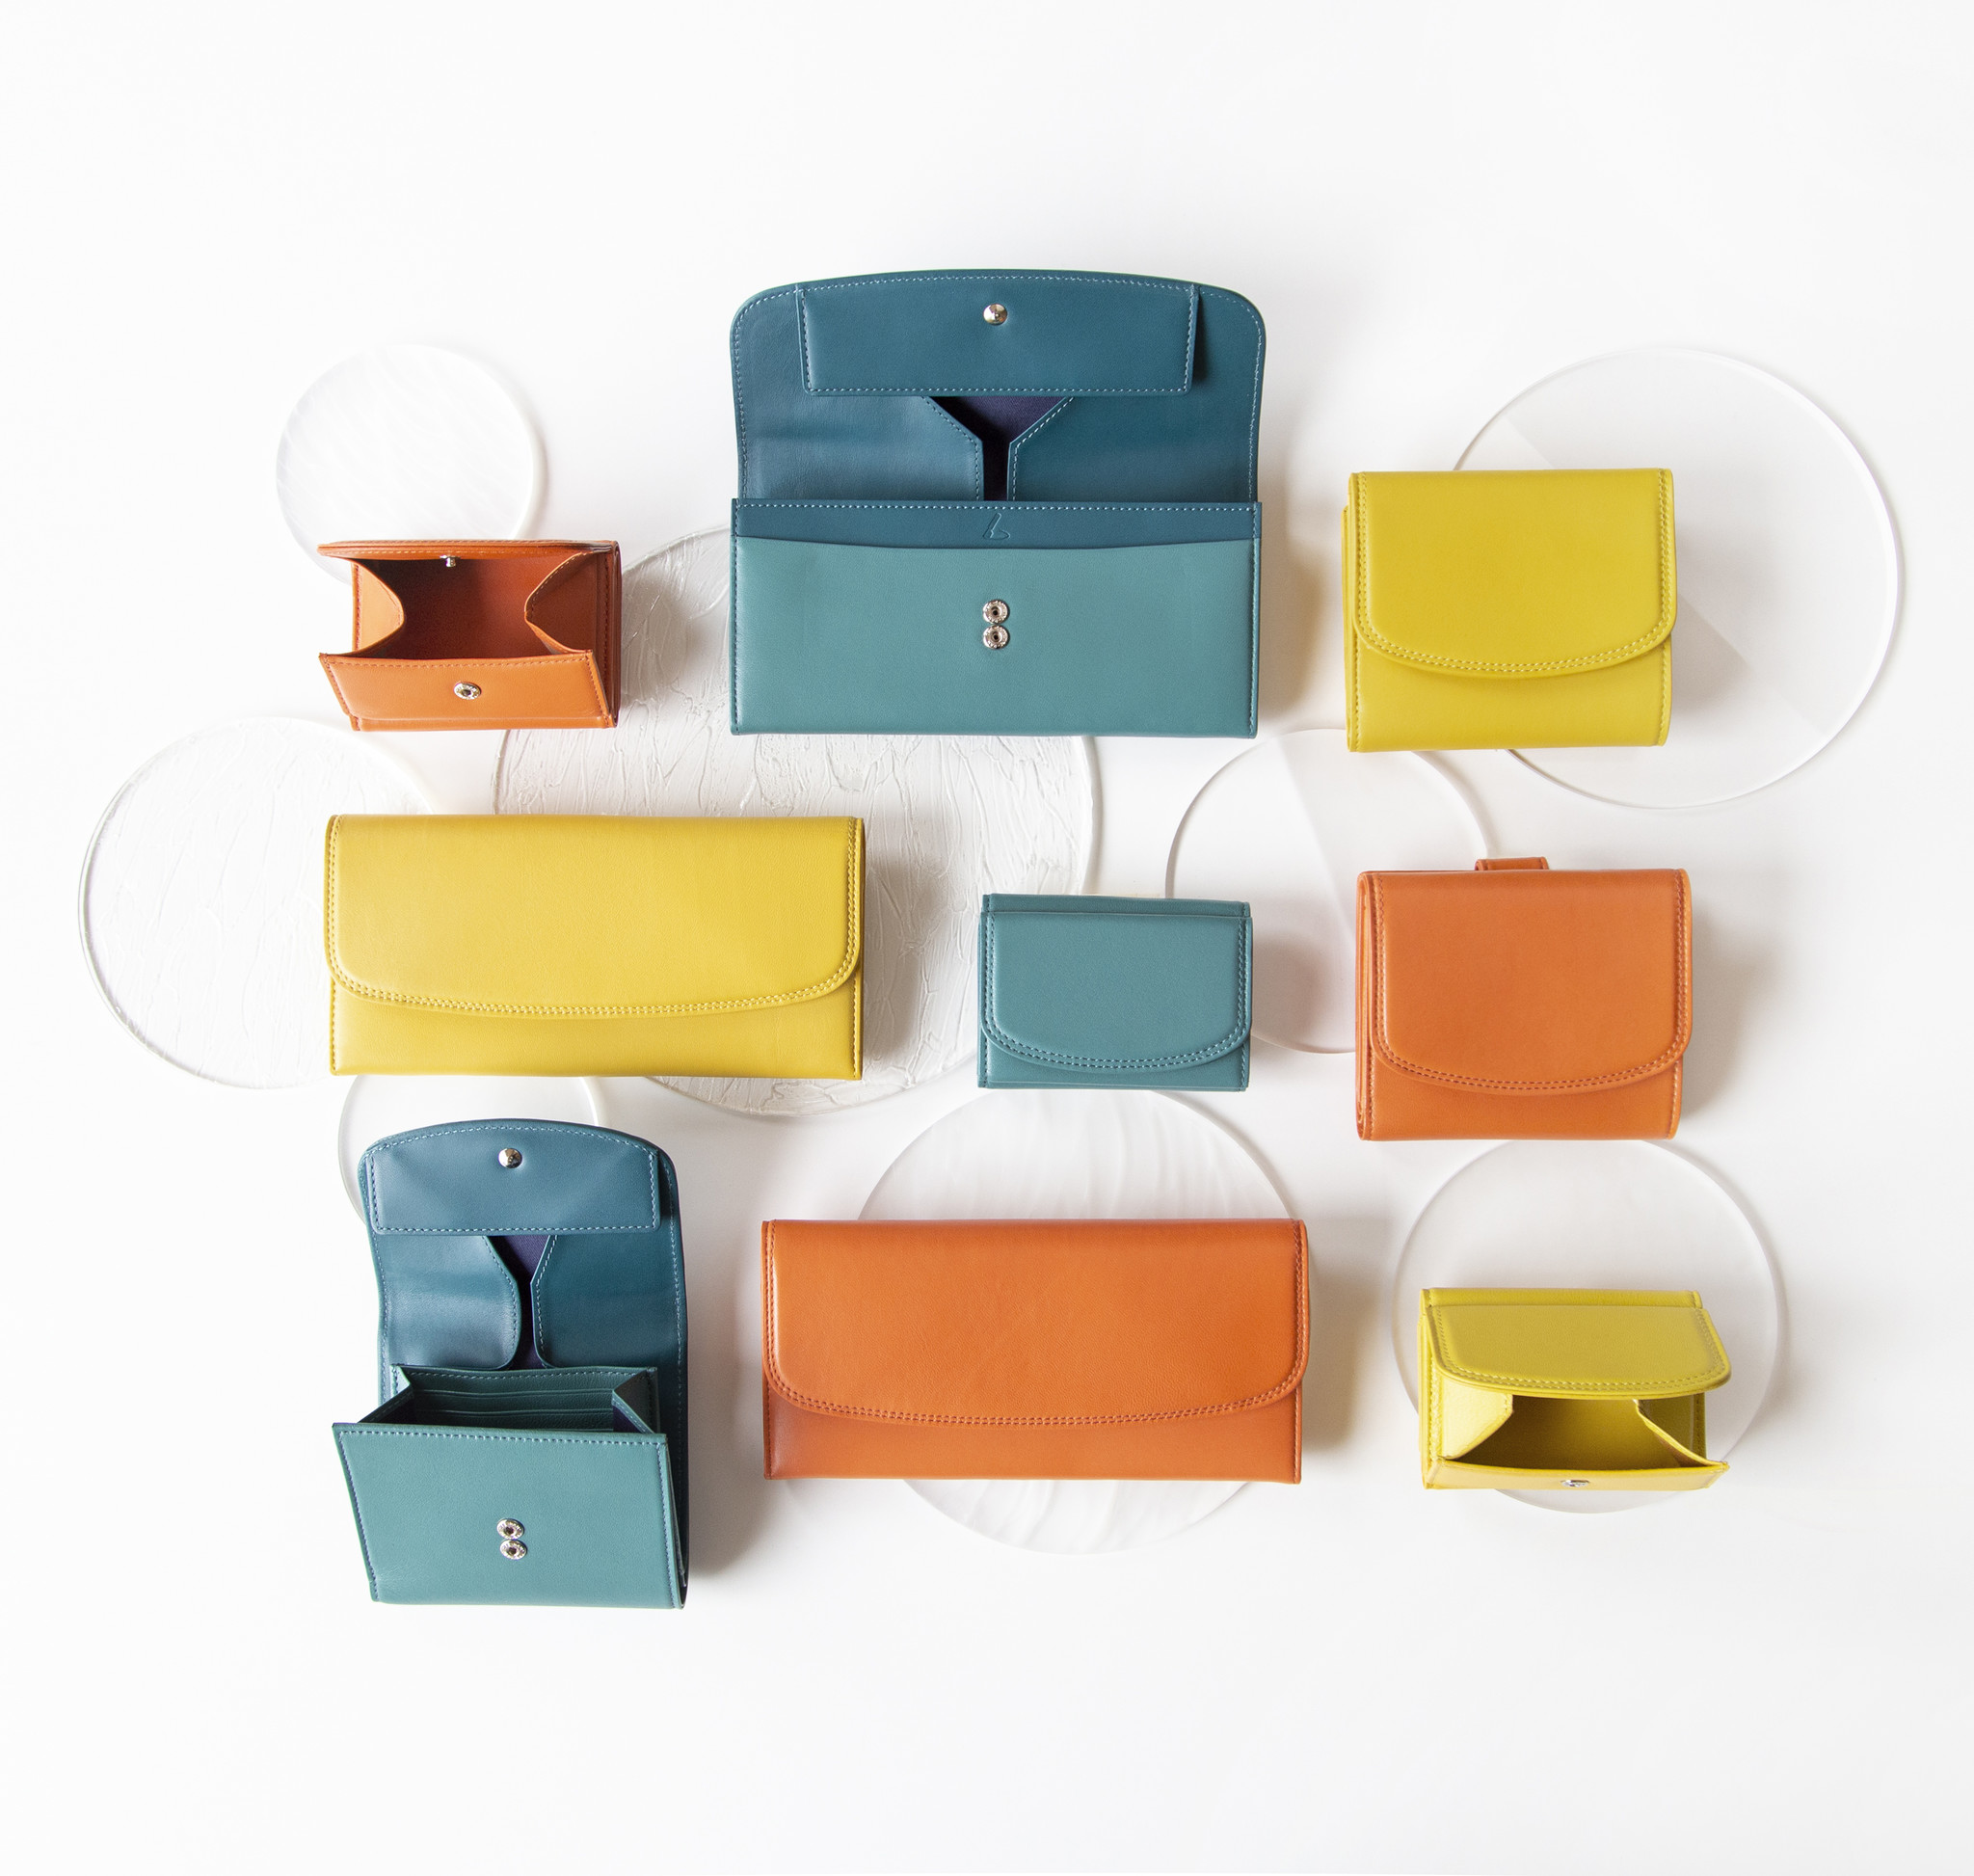 土屋鞄 夏のスタイルに鮮やかな彩りを 色を楽しむ革小物の新シリーズ Coeche クーシェ 誕生 土屋鞄製造所のプレスリリース